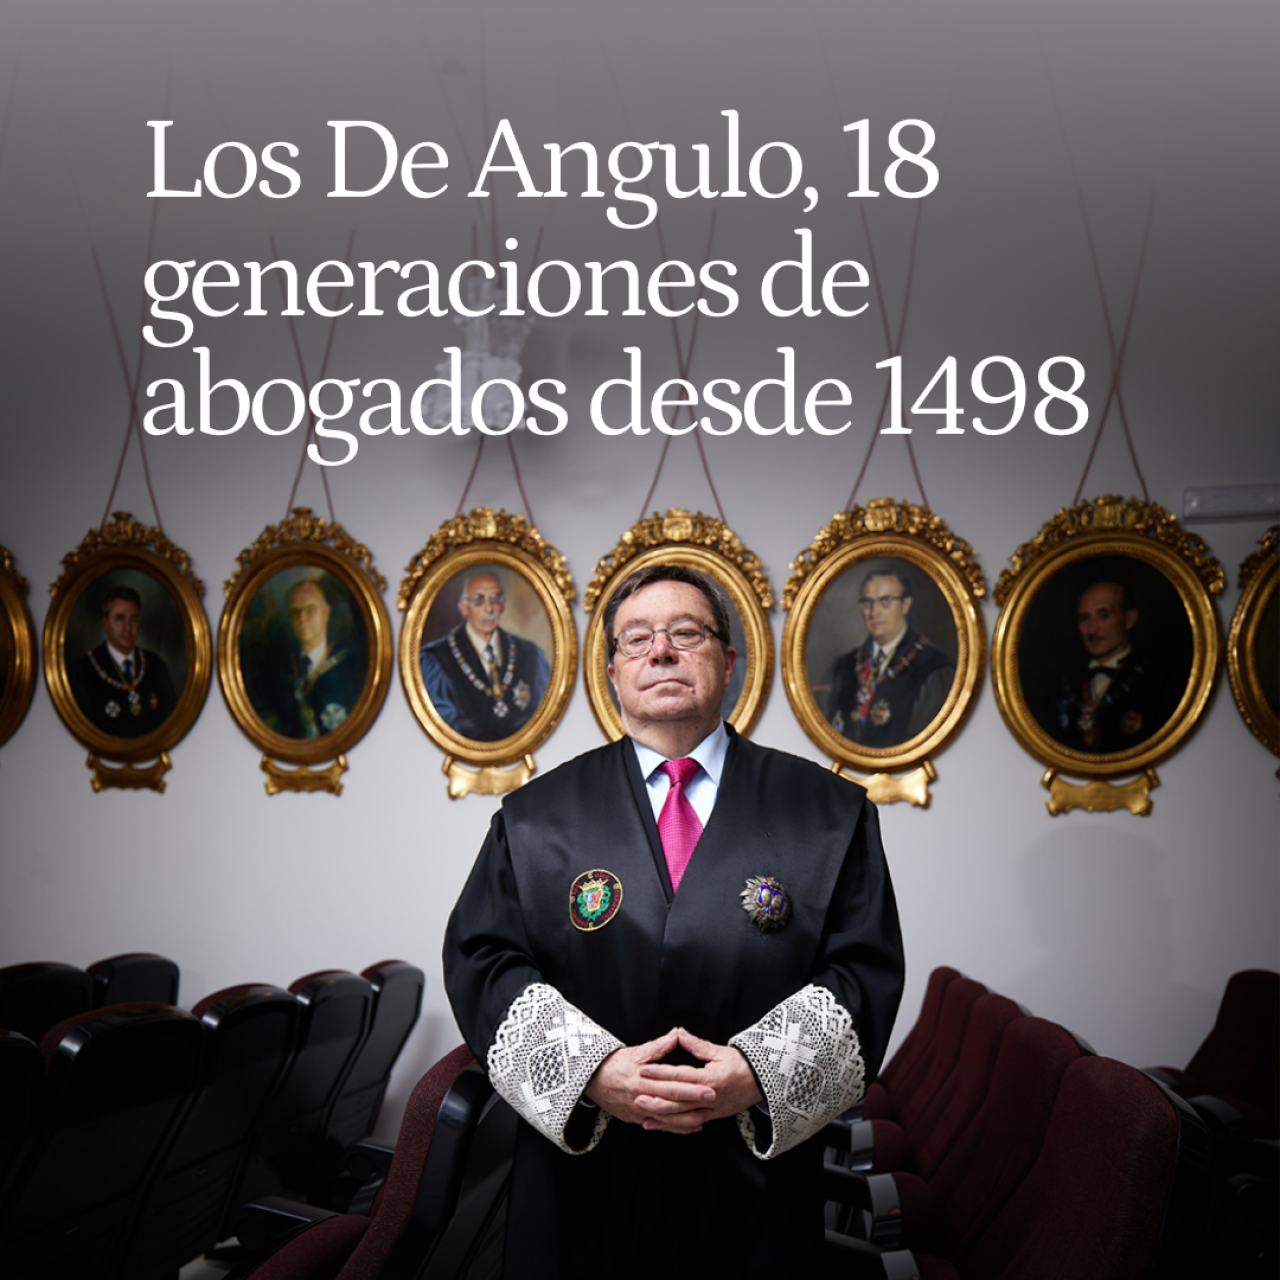 Los De Angulo, 18 generaciones de abogados desde 1498: del que firmó el testamento de Isabel la Católica al despacho de José María